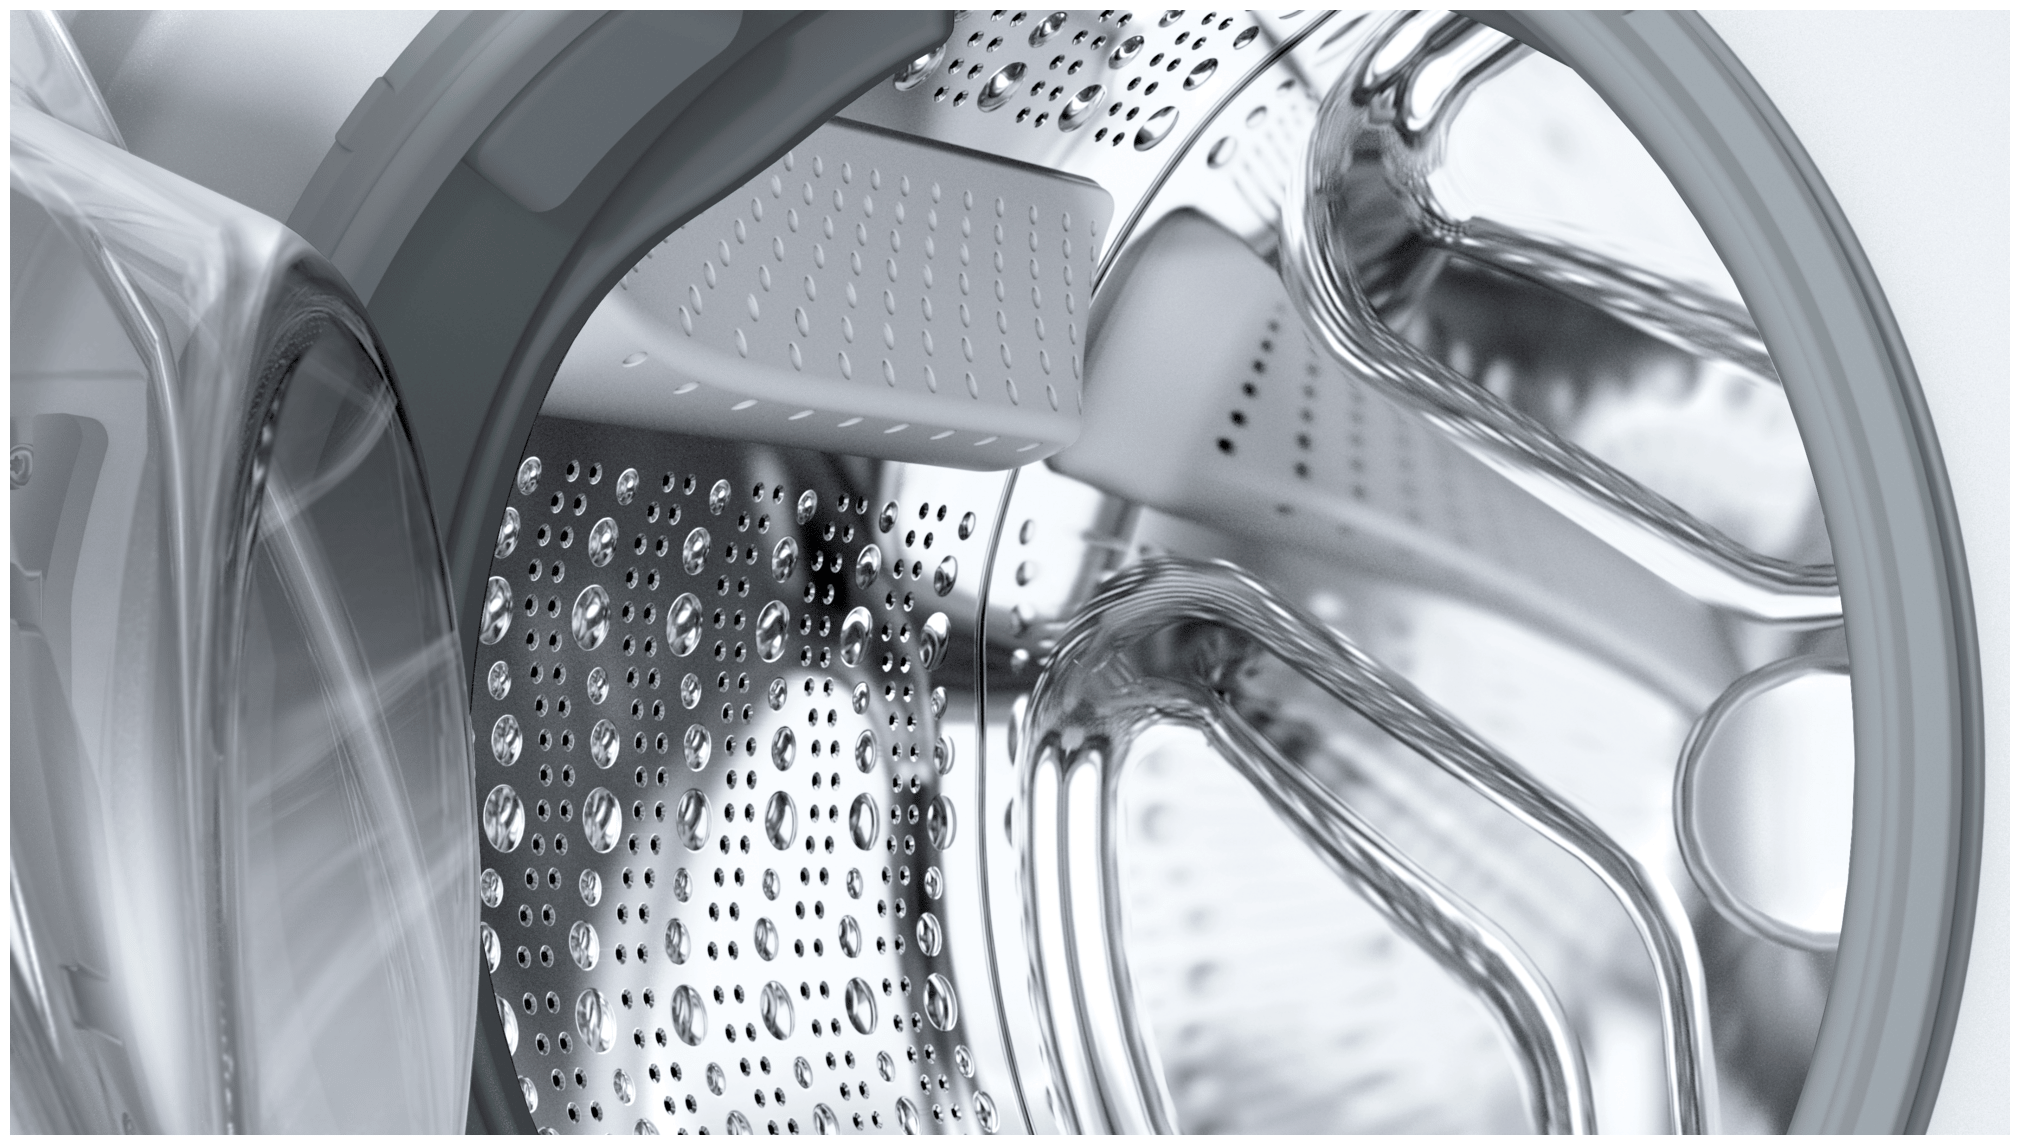 Siemens iQ700 WG44B2090 Waschmaschine A AutoClean EEK: Technomarkt expert U/min 9 kg Frontlader aquaStop 1400 von